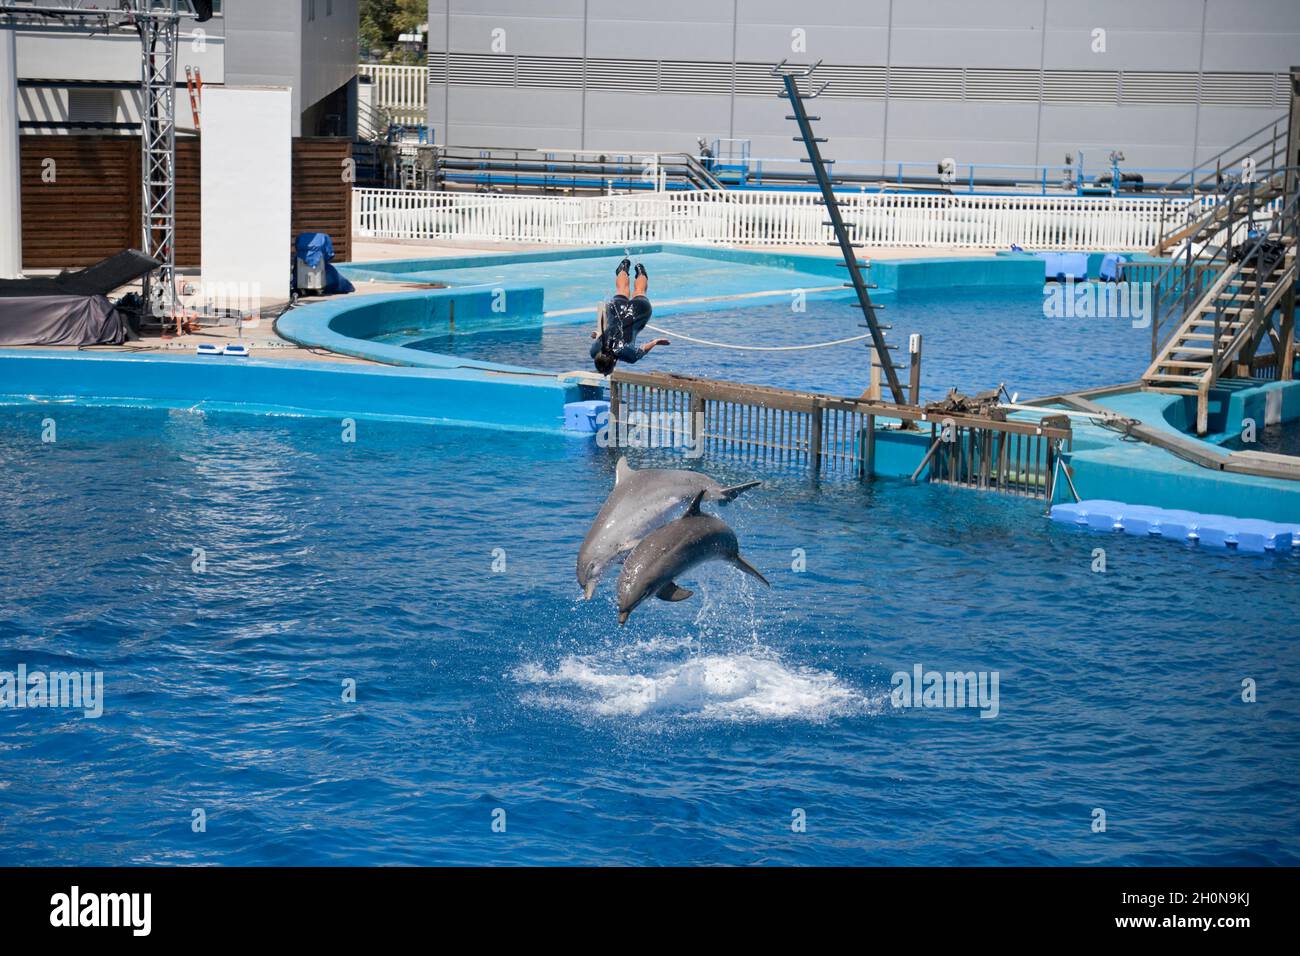 Dolphin show in an aquarium, Spain Stock Photo